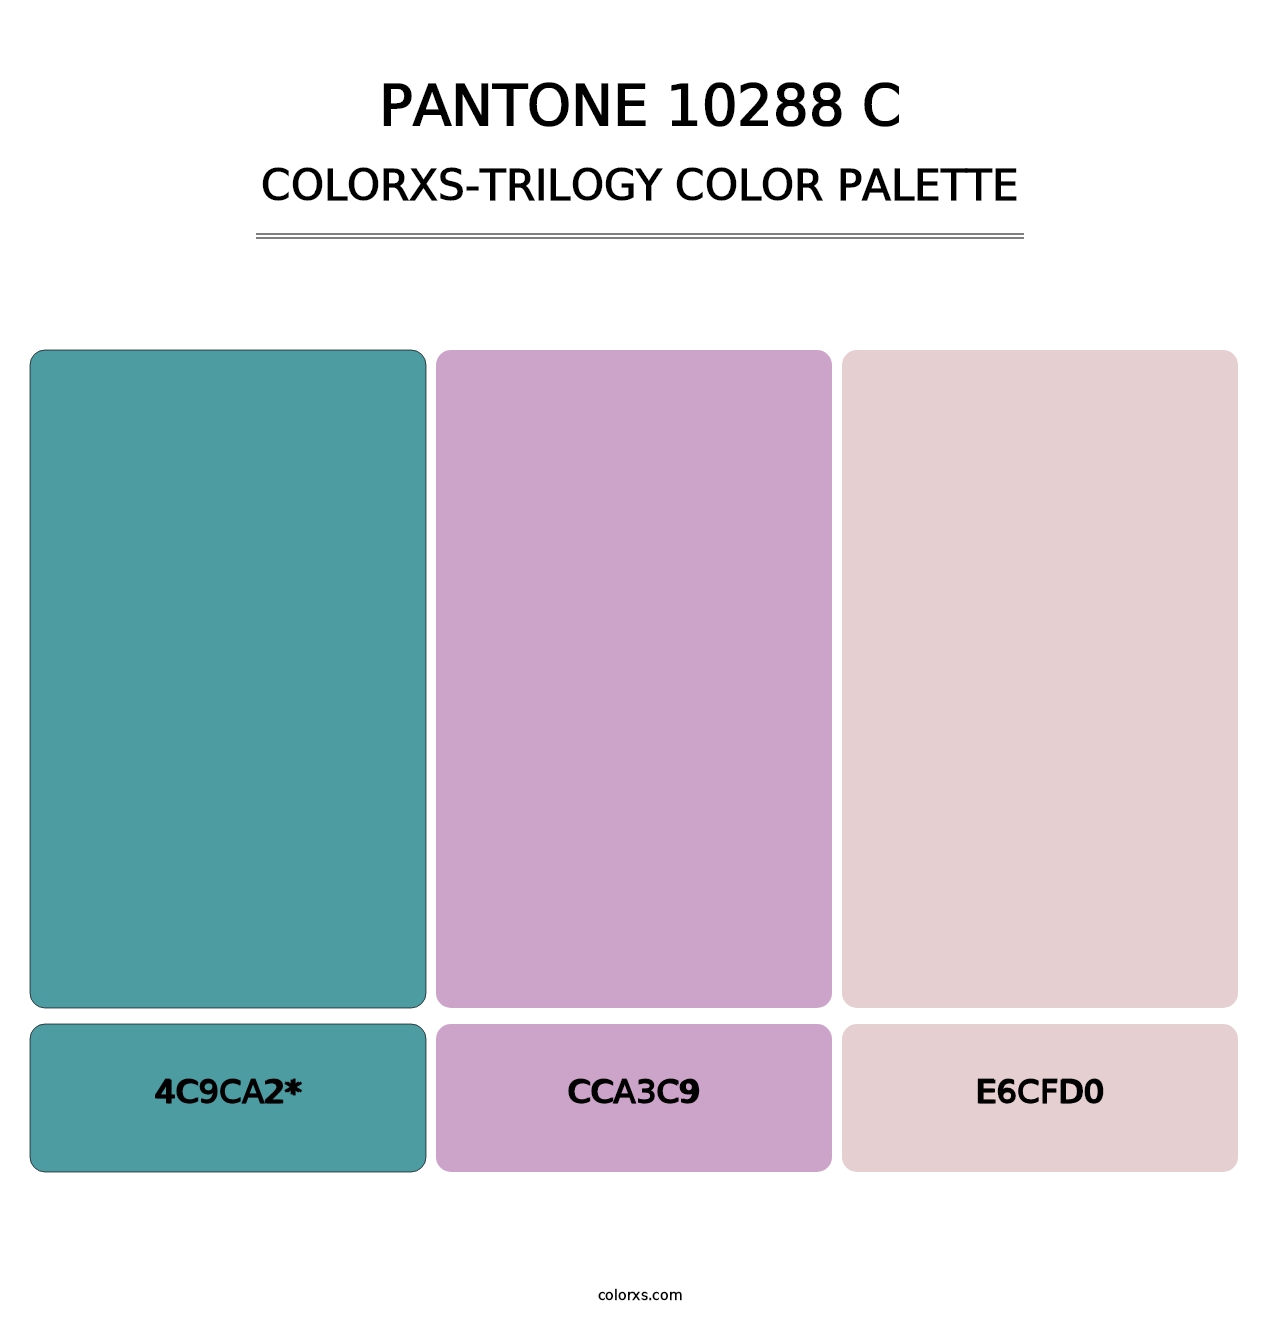 PANTONE 10288 C - Colorxs Trilogy Palette